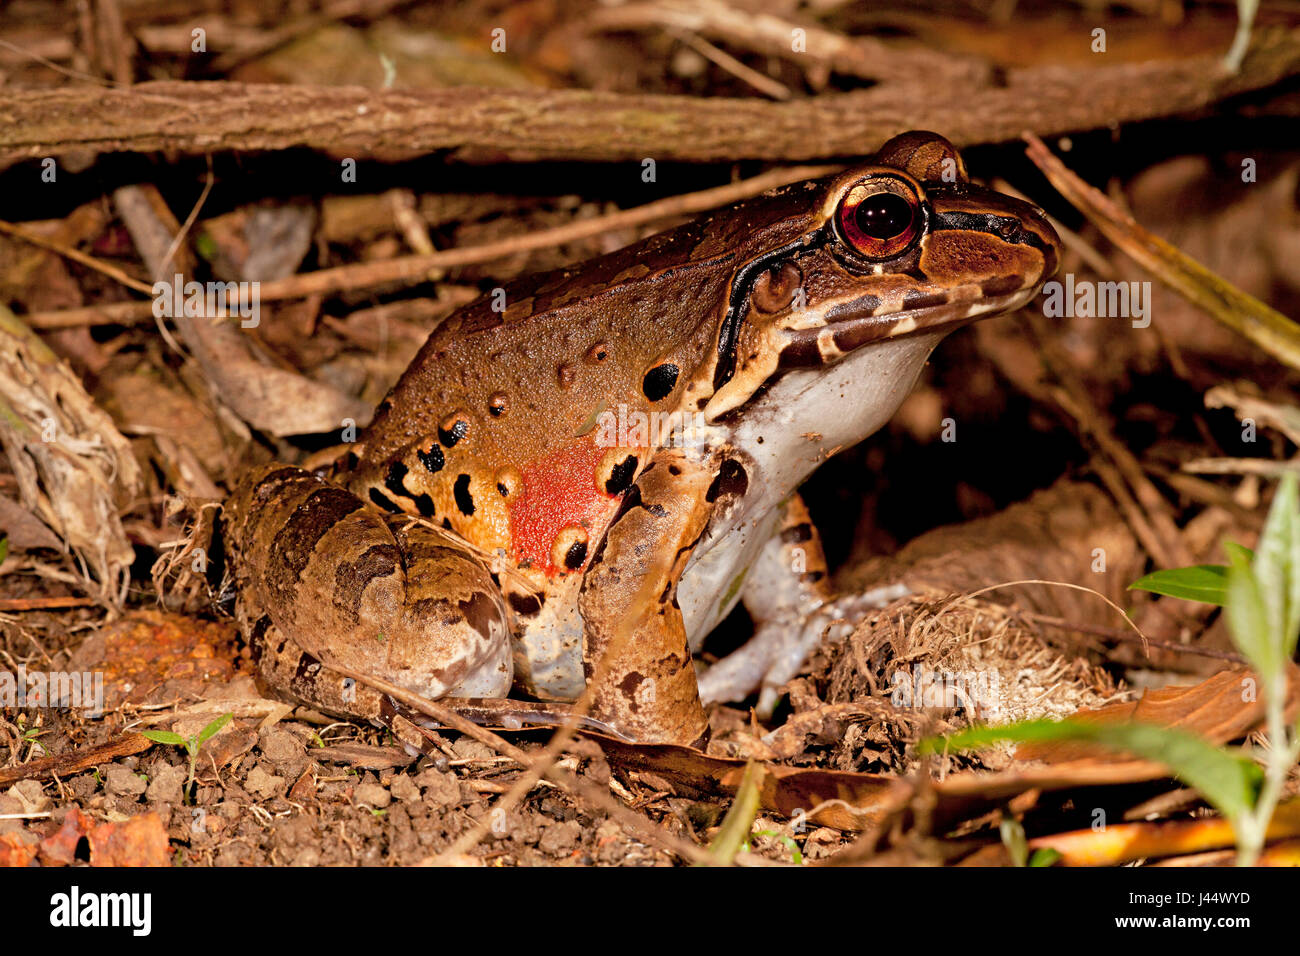 Foto de un Knudsen es fino-vetado frog Foto de stock